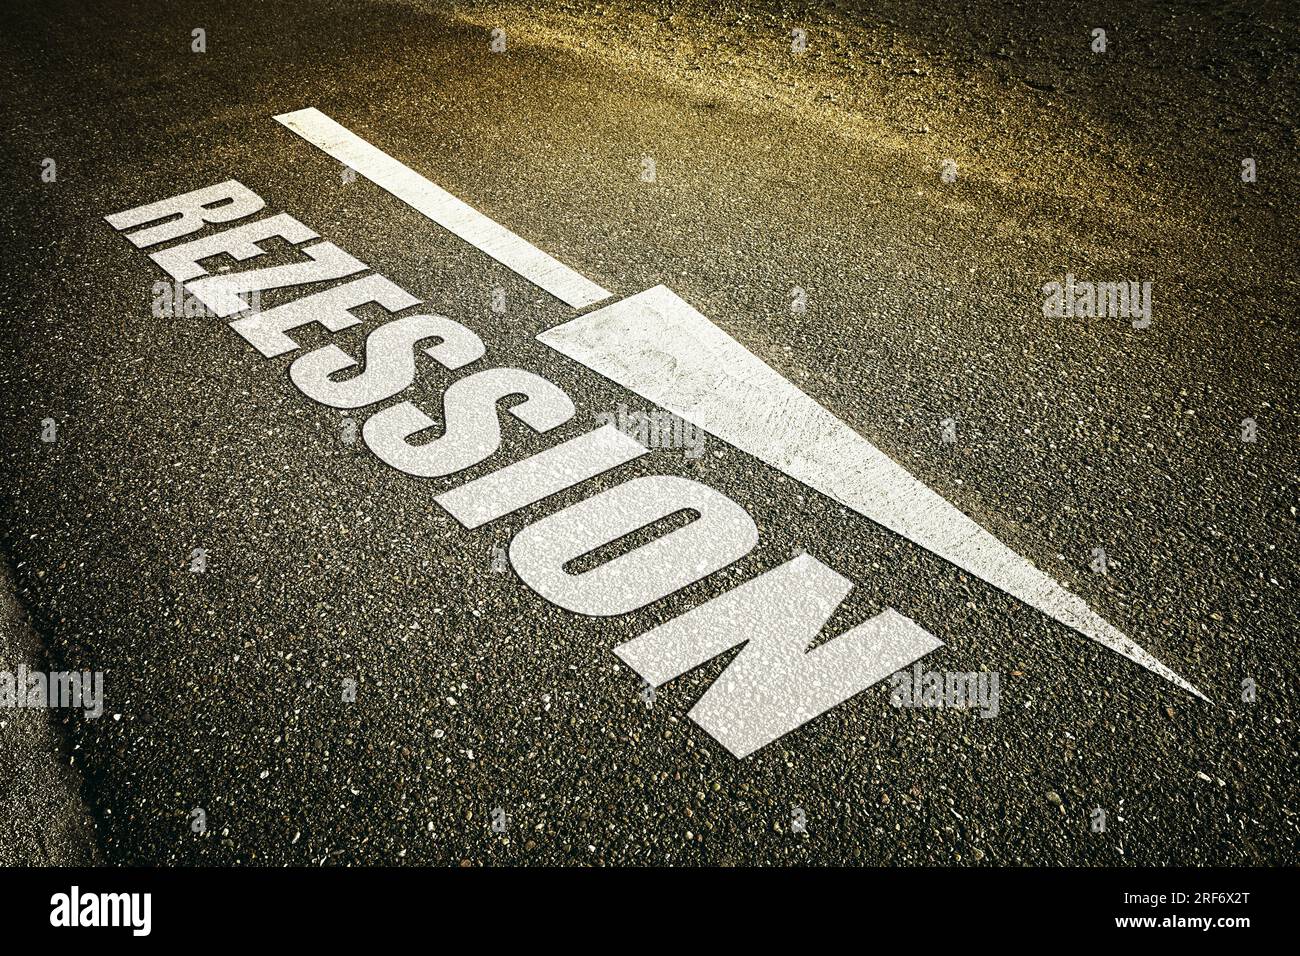 FOTOMONTAGE, Absteigendes Pfeilsymbol auf Straßenasphalt und Schriftzug Rezession, Symbolfoto Wirtschaftskrise Stock Photo